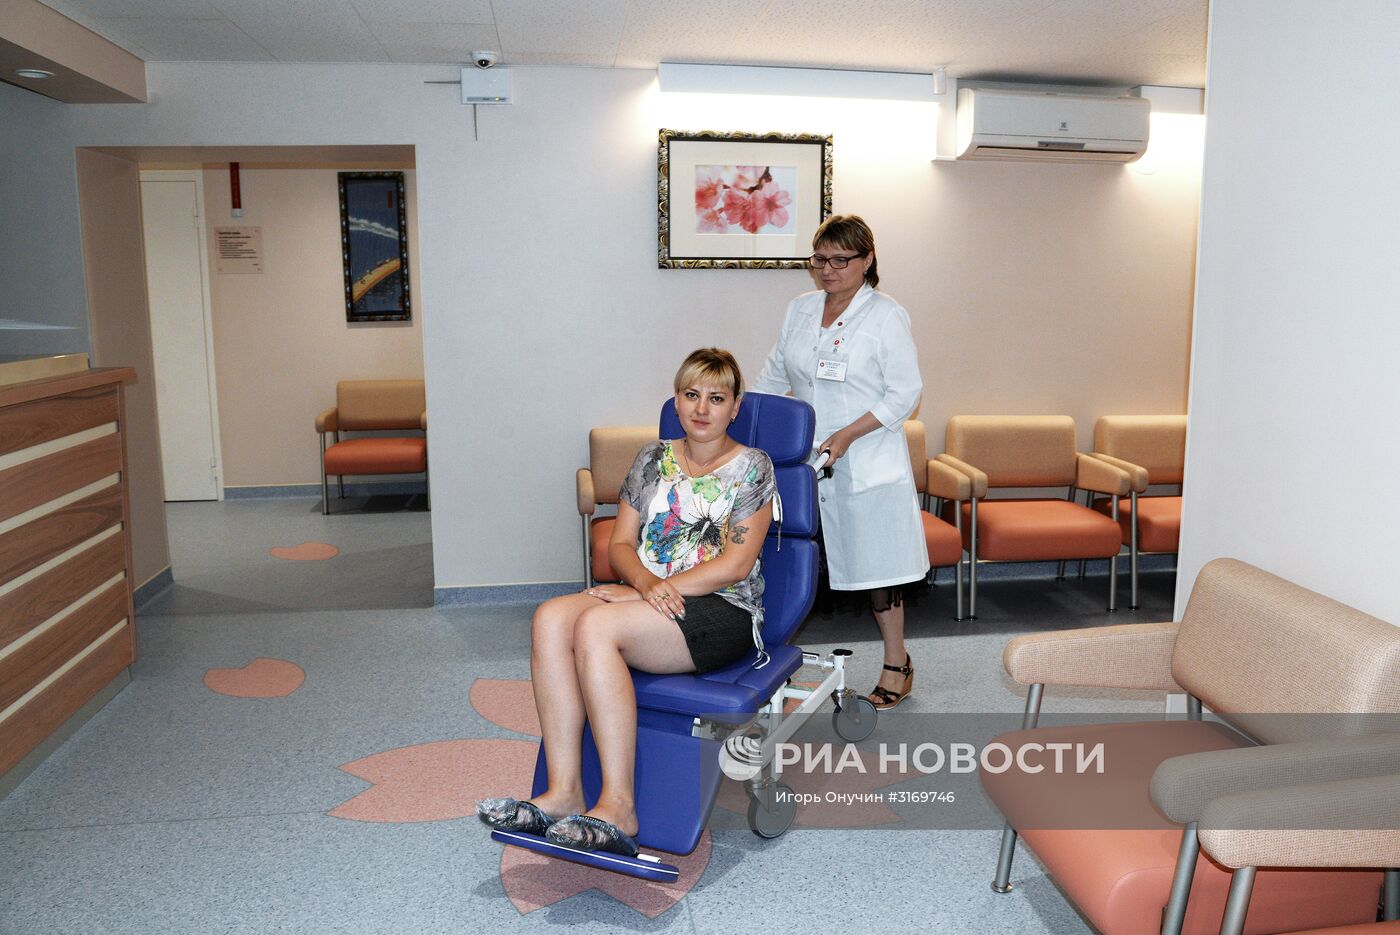 Российско-японский медицинский центр "Саико" в Хабаровске